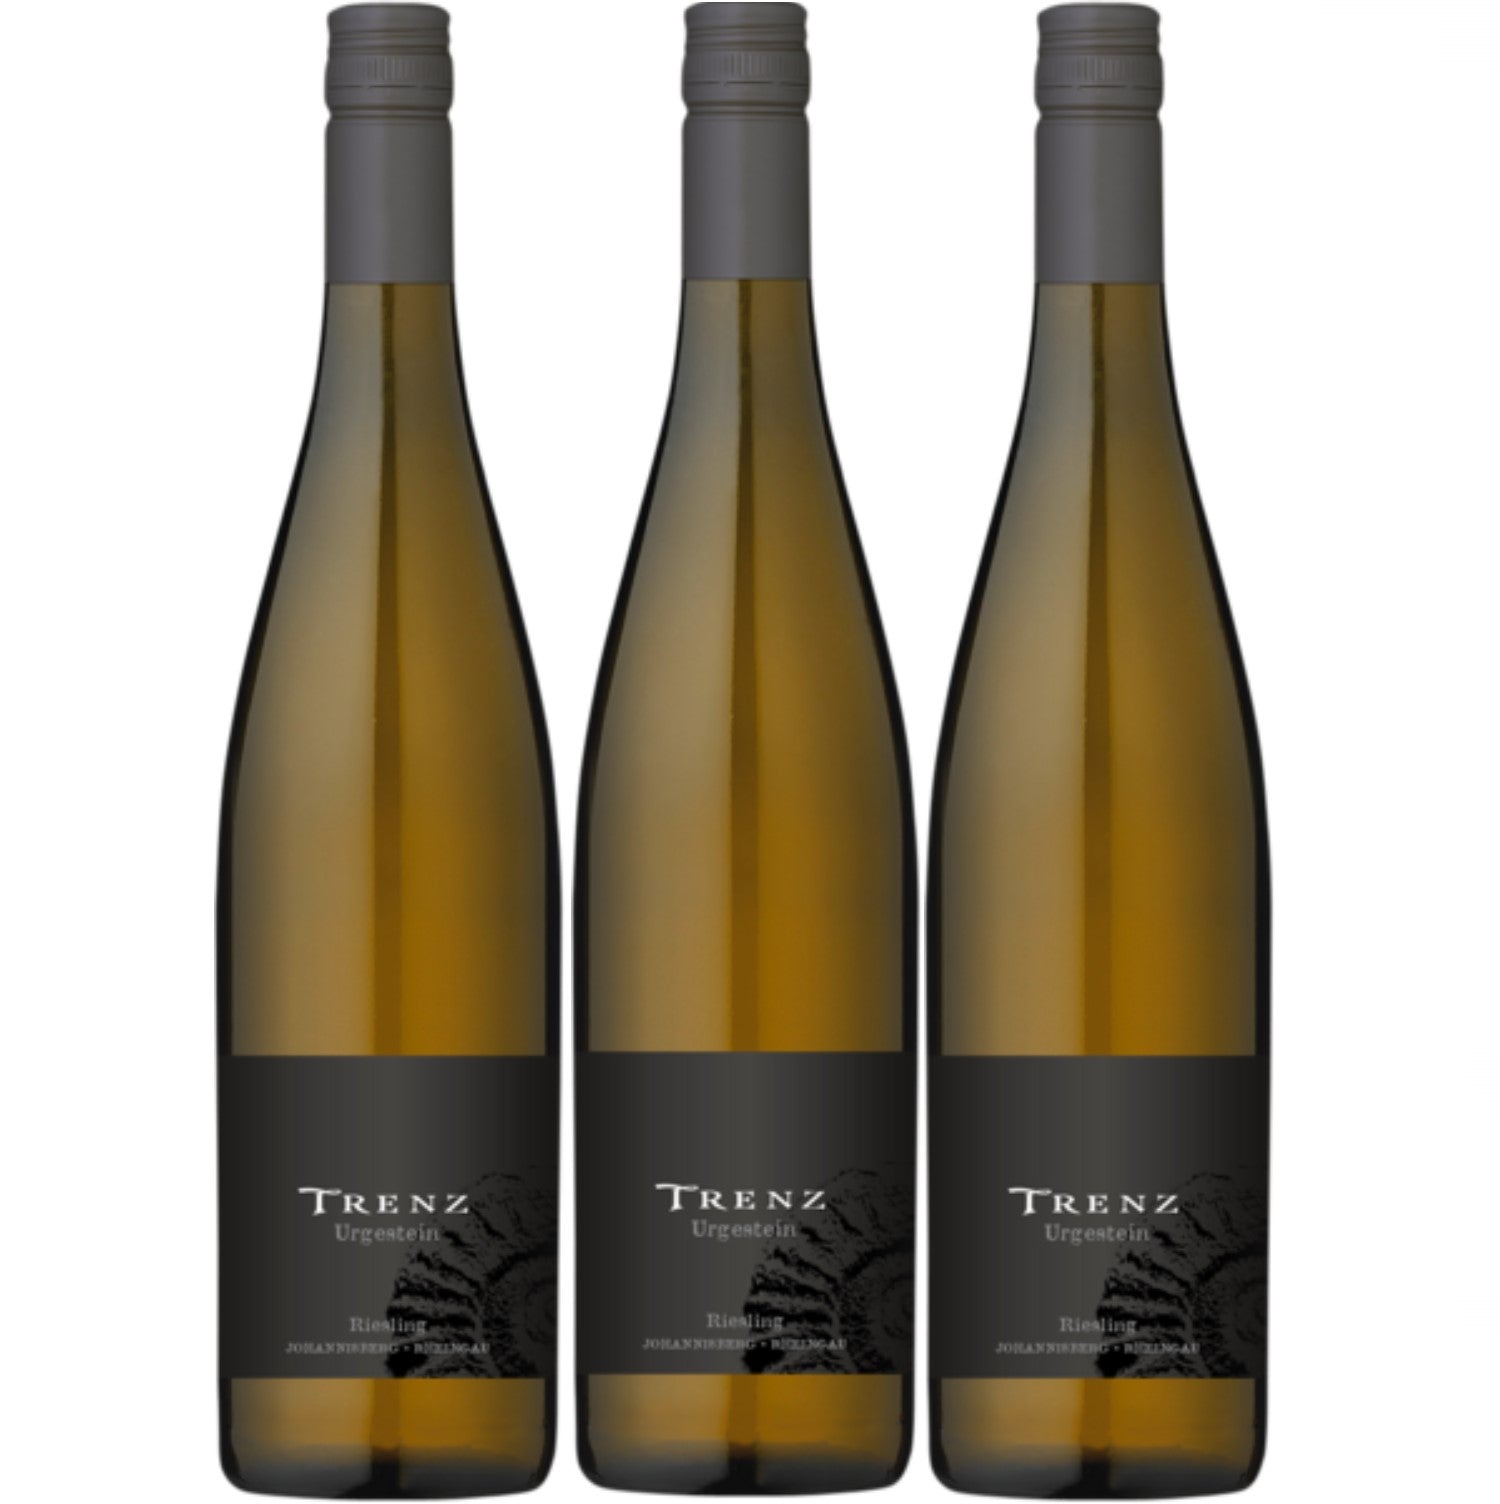 Trenz Urgestein Riesling white wine dry wine QbA Germany (3 x 0.75l)